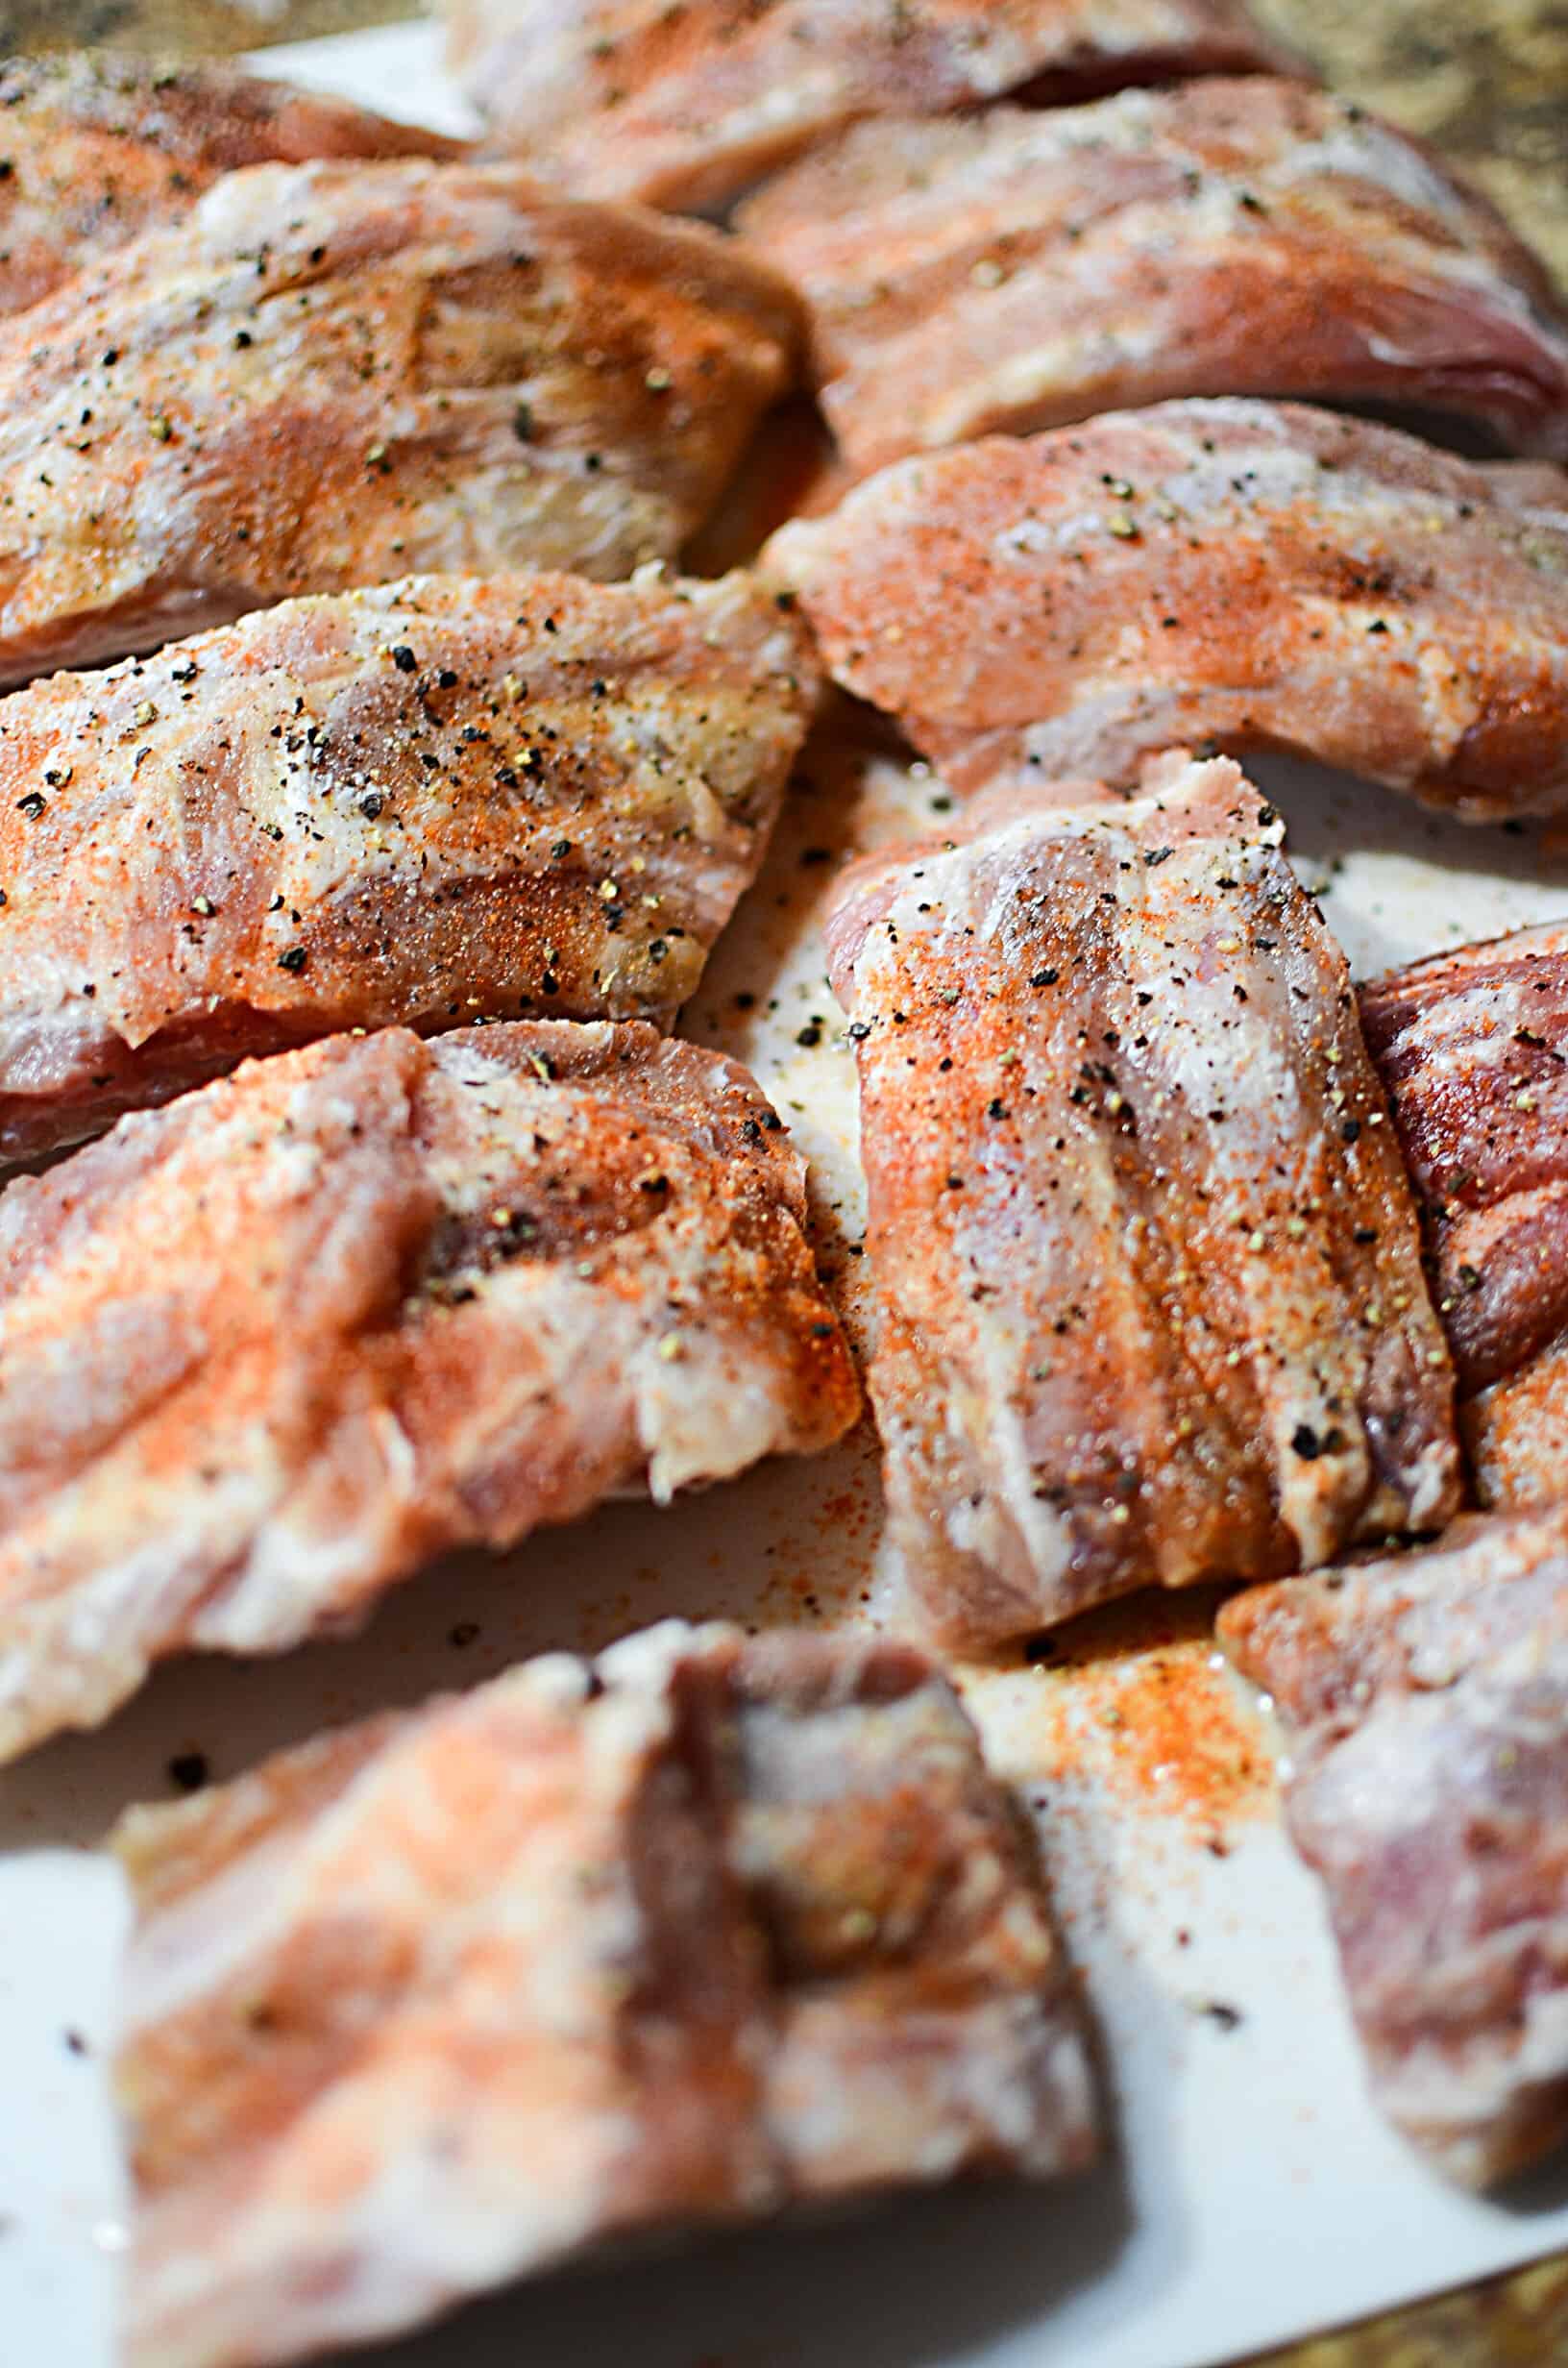 Uncooked ribs sprinkled with seasonings.